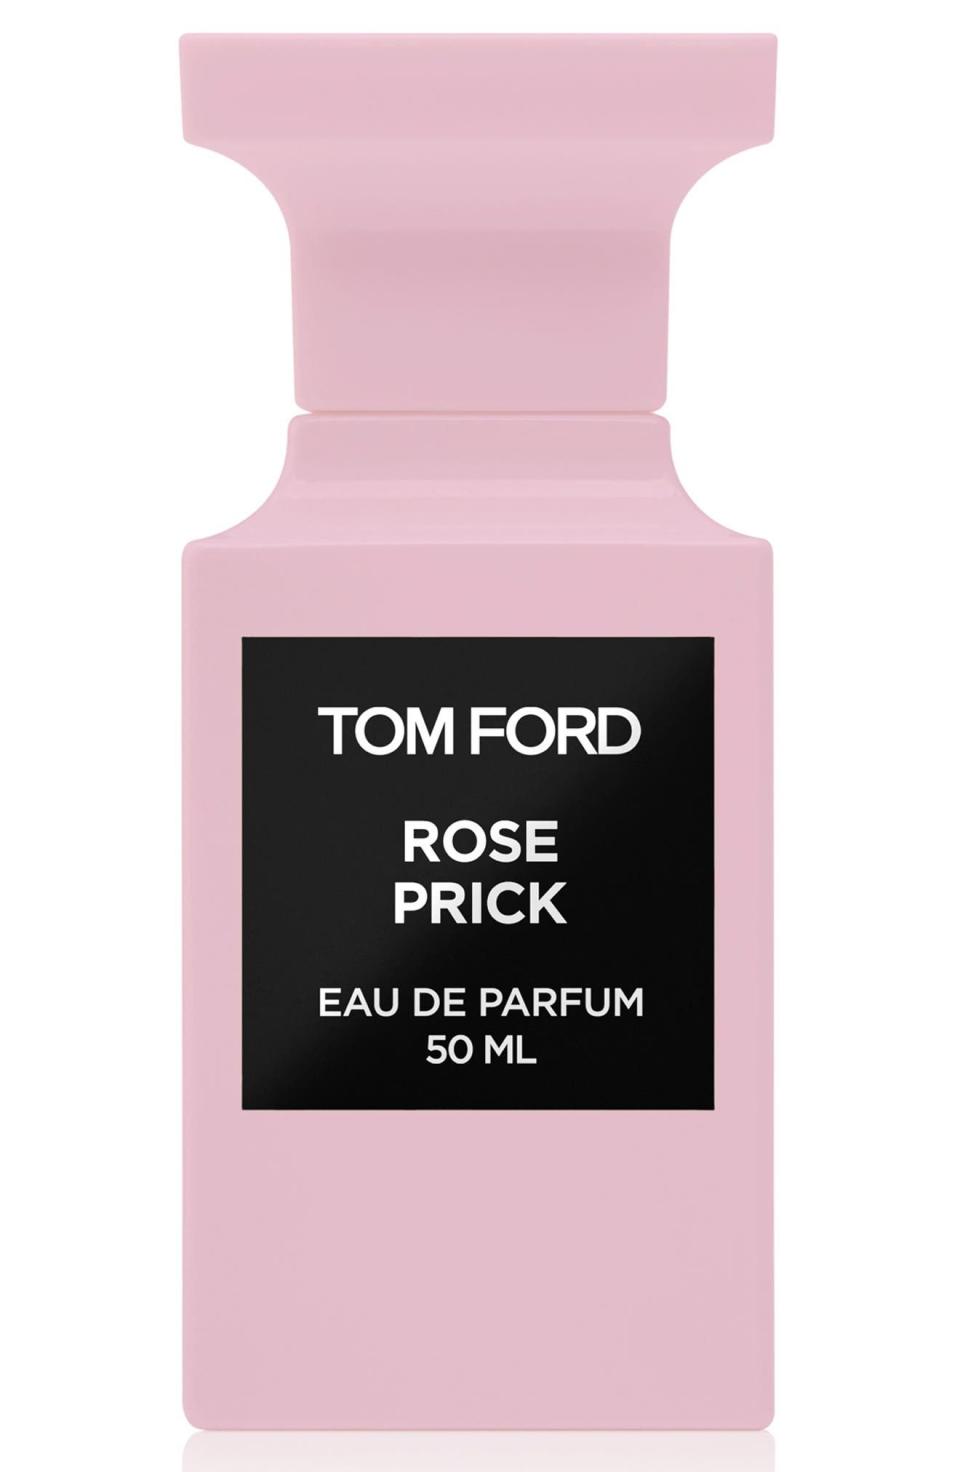 5) Private Blend Rose Prick Eau de Parfum